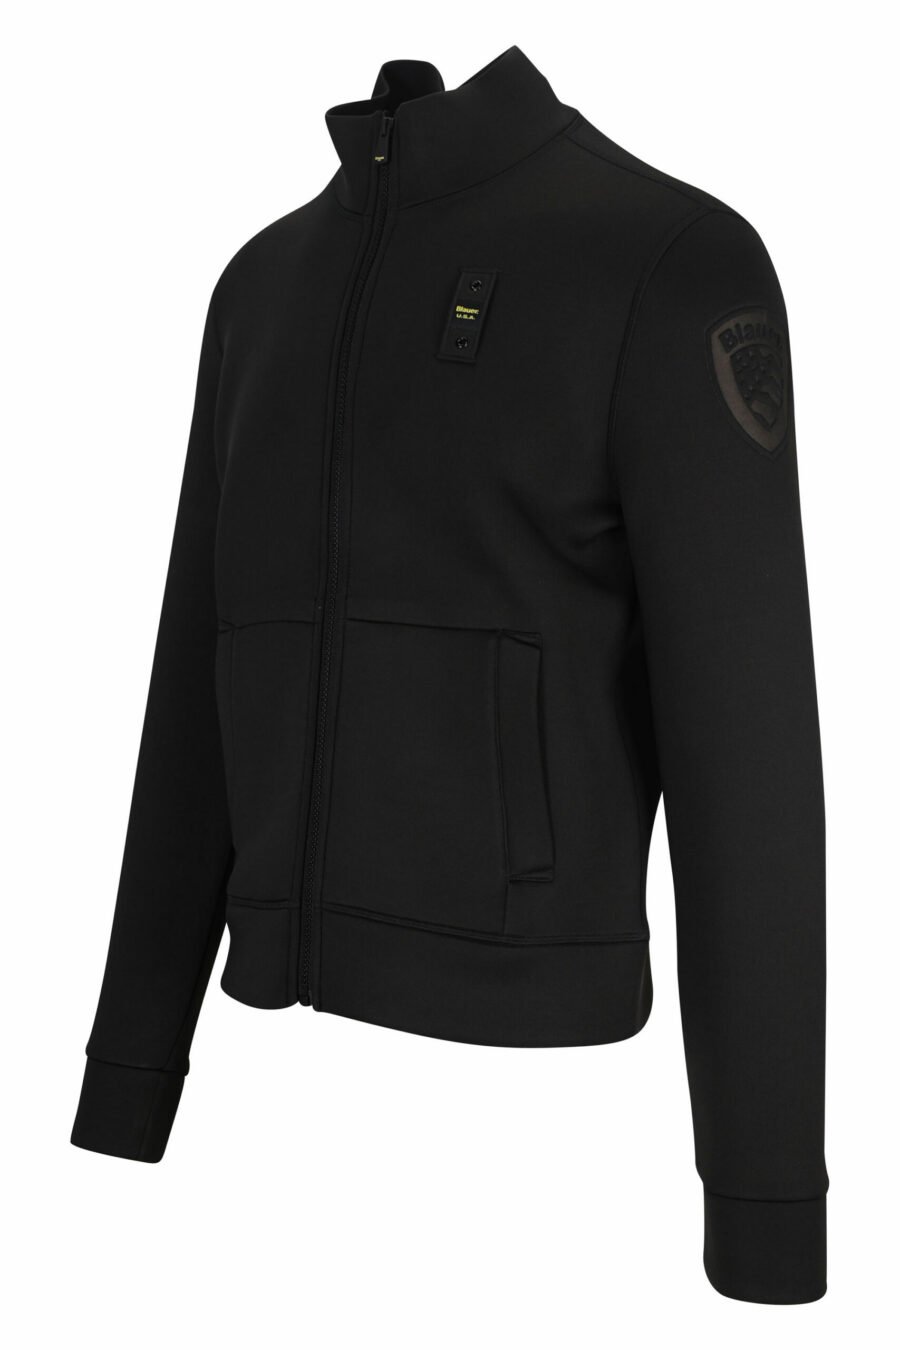 Schwarzes Sweatshirt mit Reißverschluss und einfarbigem Logoaufnäher - 8058610660024 1 skaliert